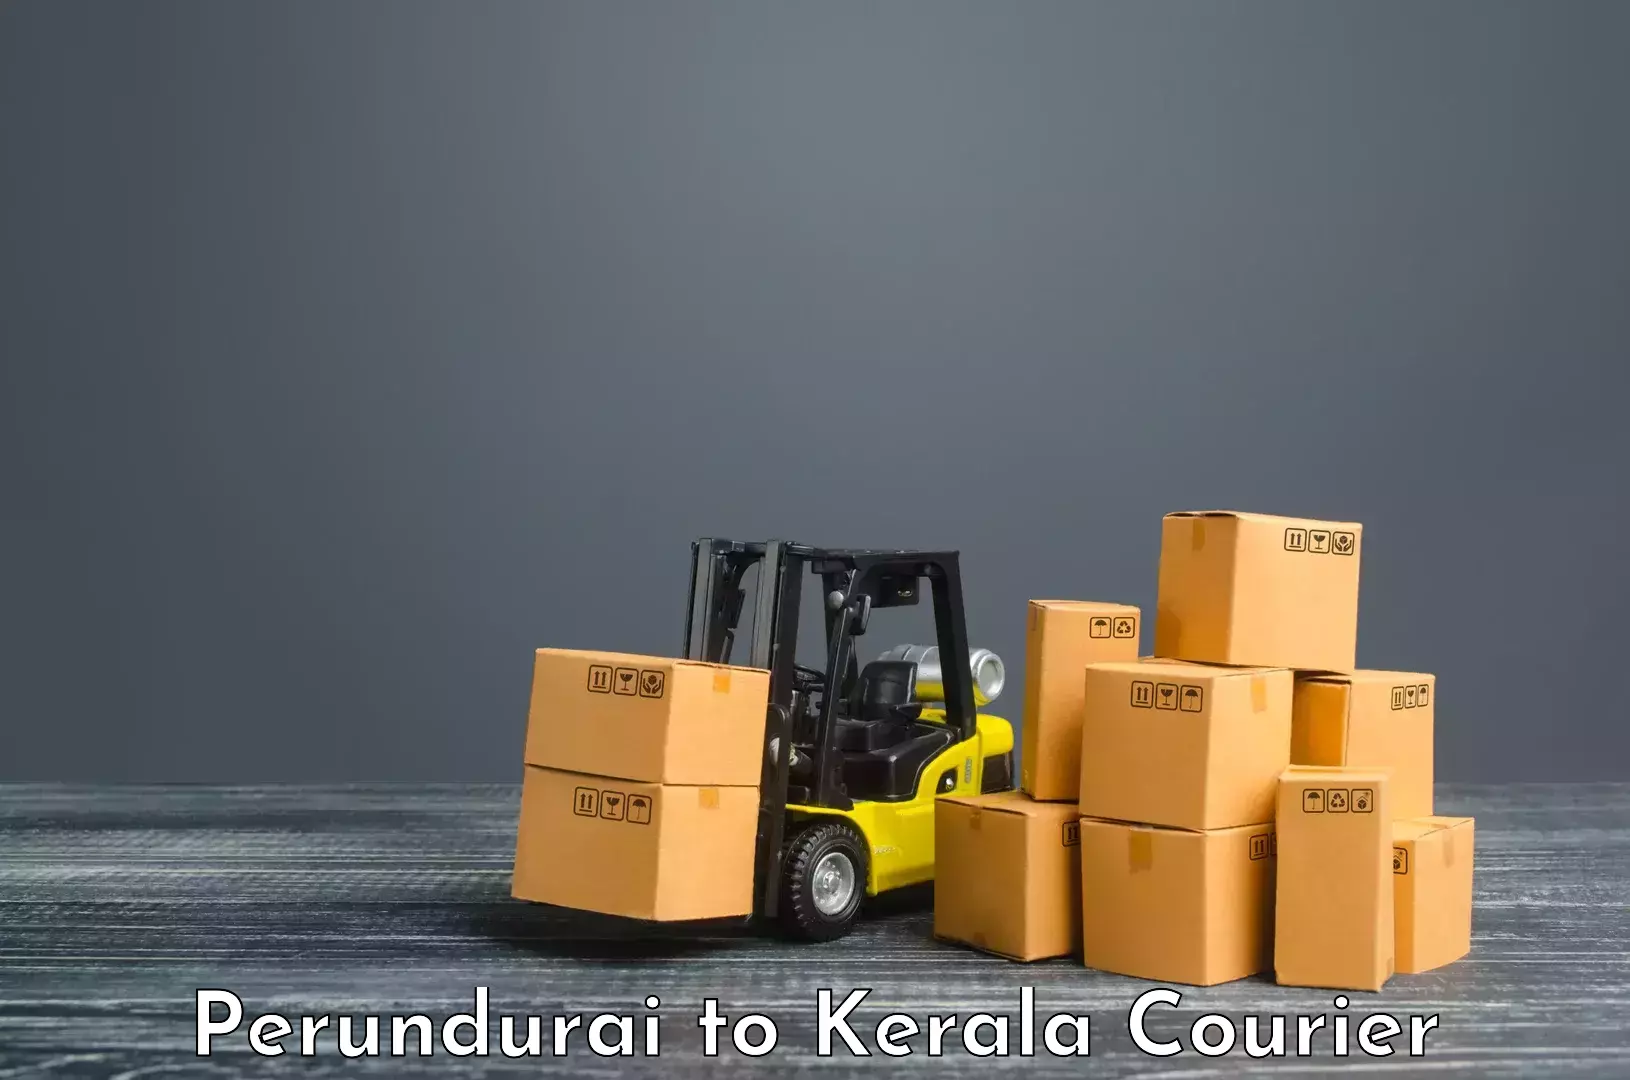 Efficient freight service Perundurai to Trivandrum